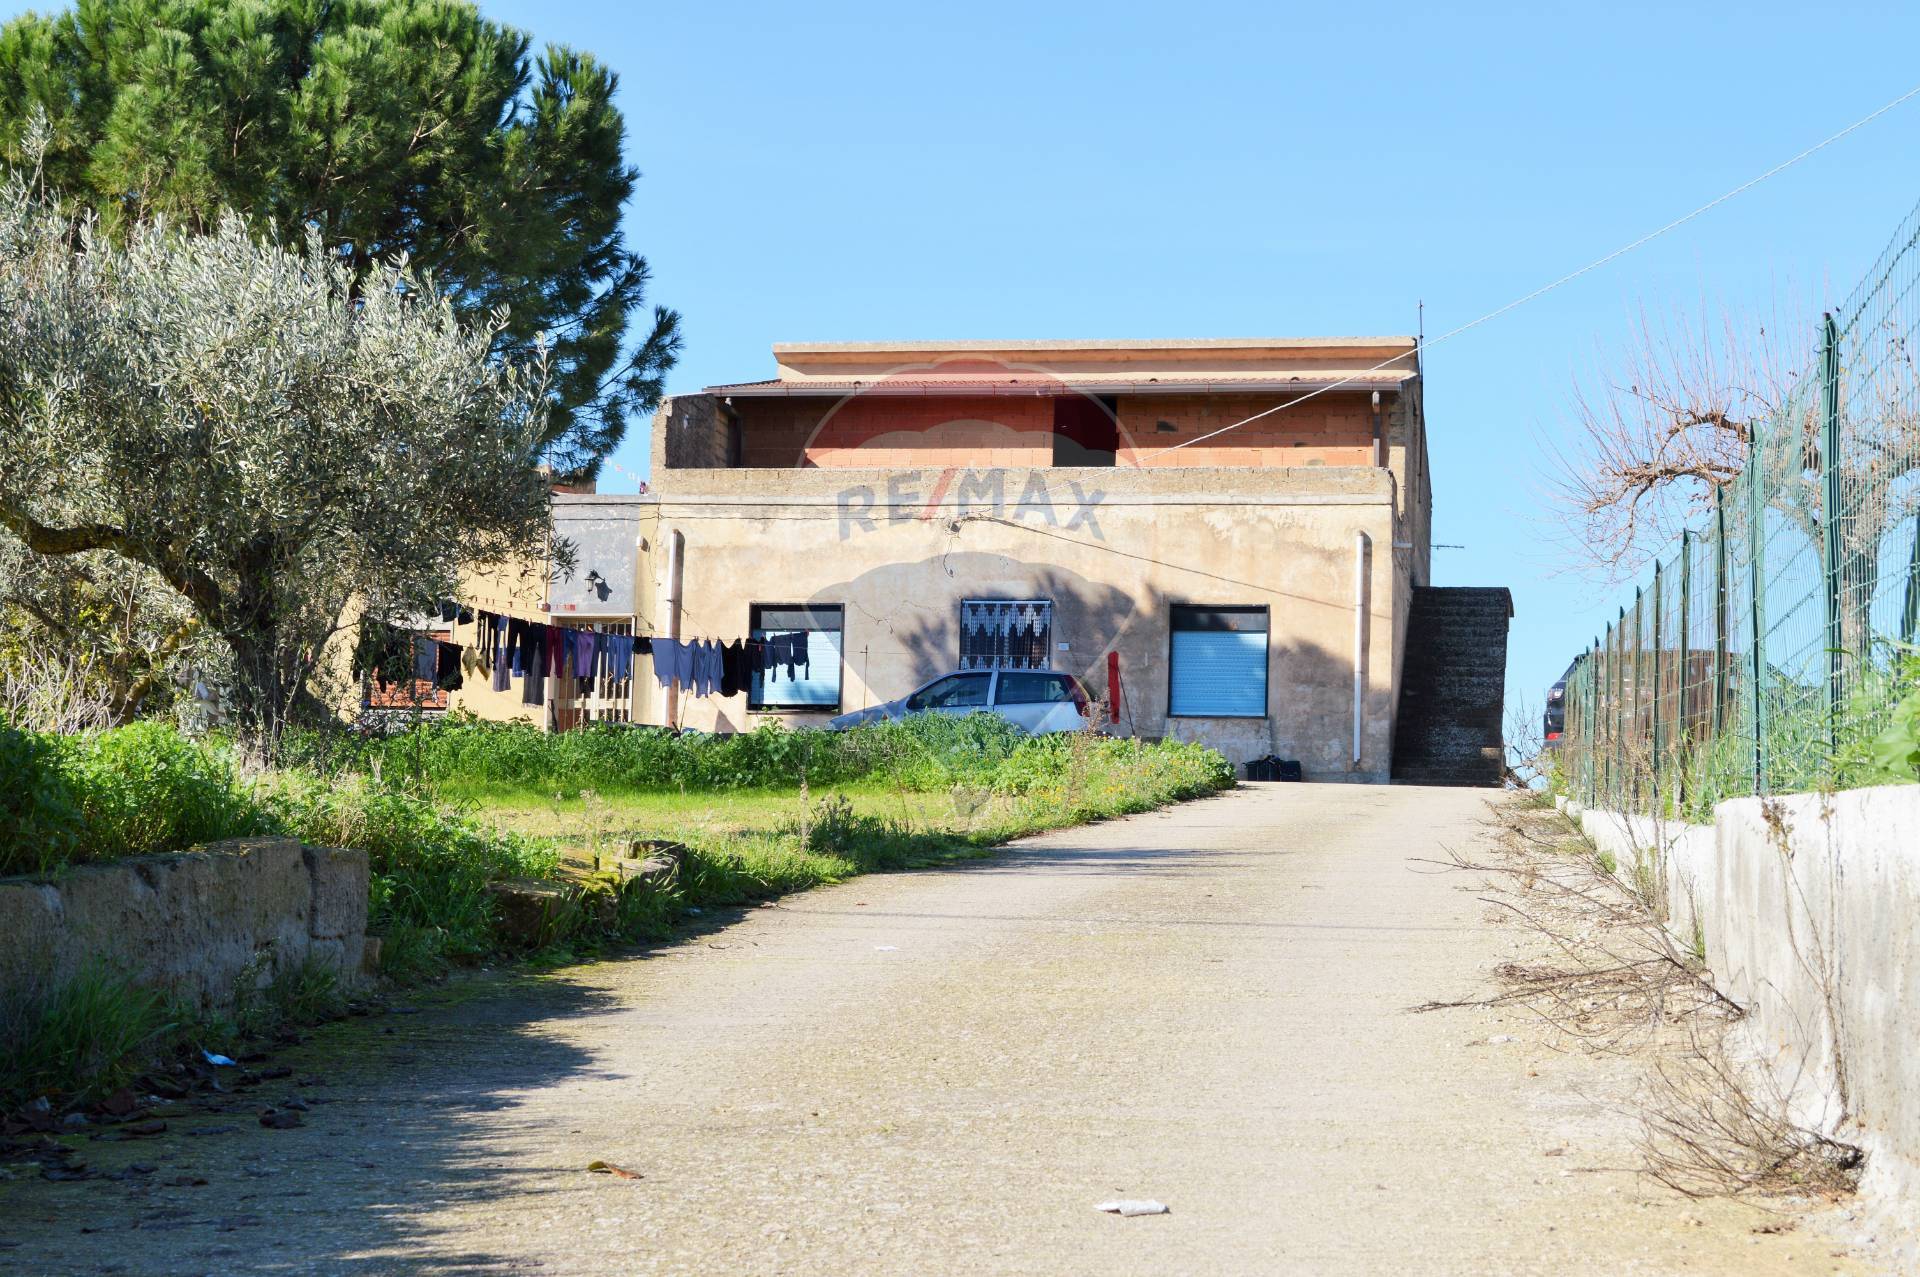 Soluzione Semindipendente in vendita a Chiaramonte Gulfi, 6 locali, prezzo € 35.000 | CambioCasa.it